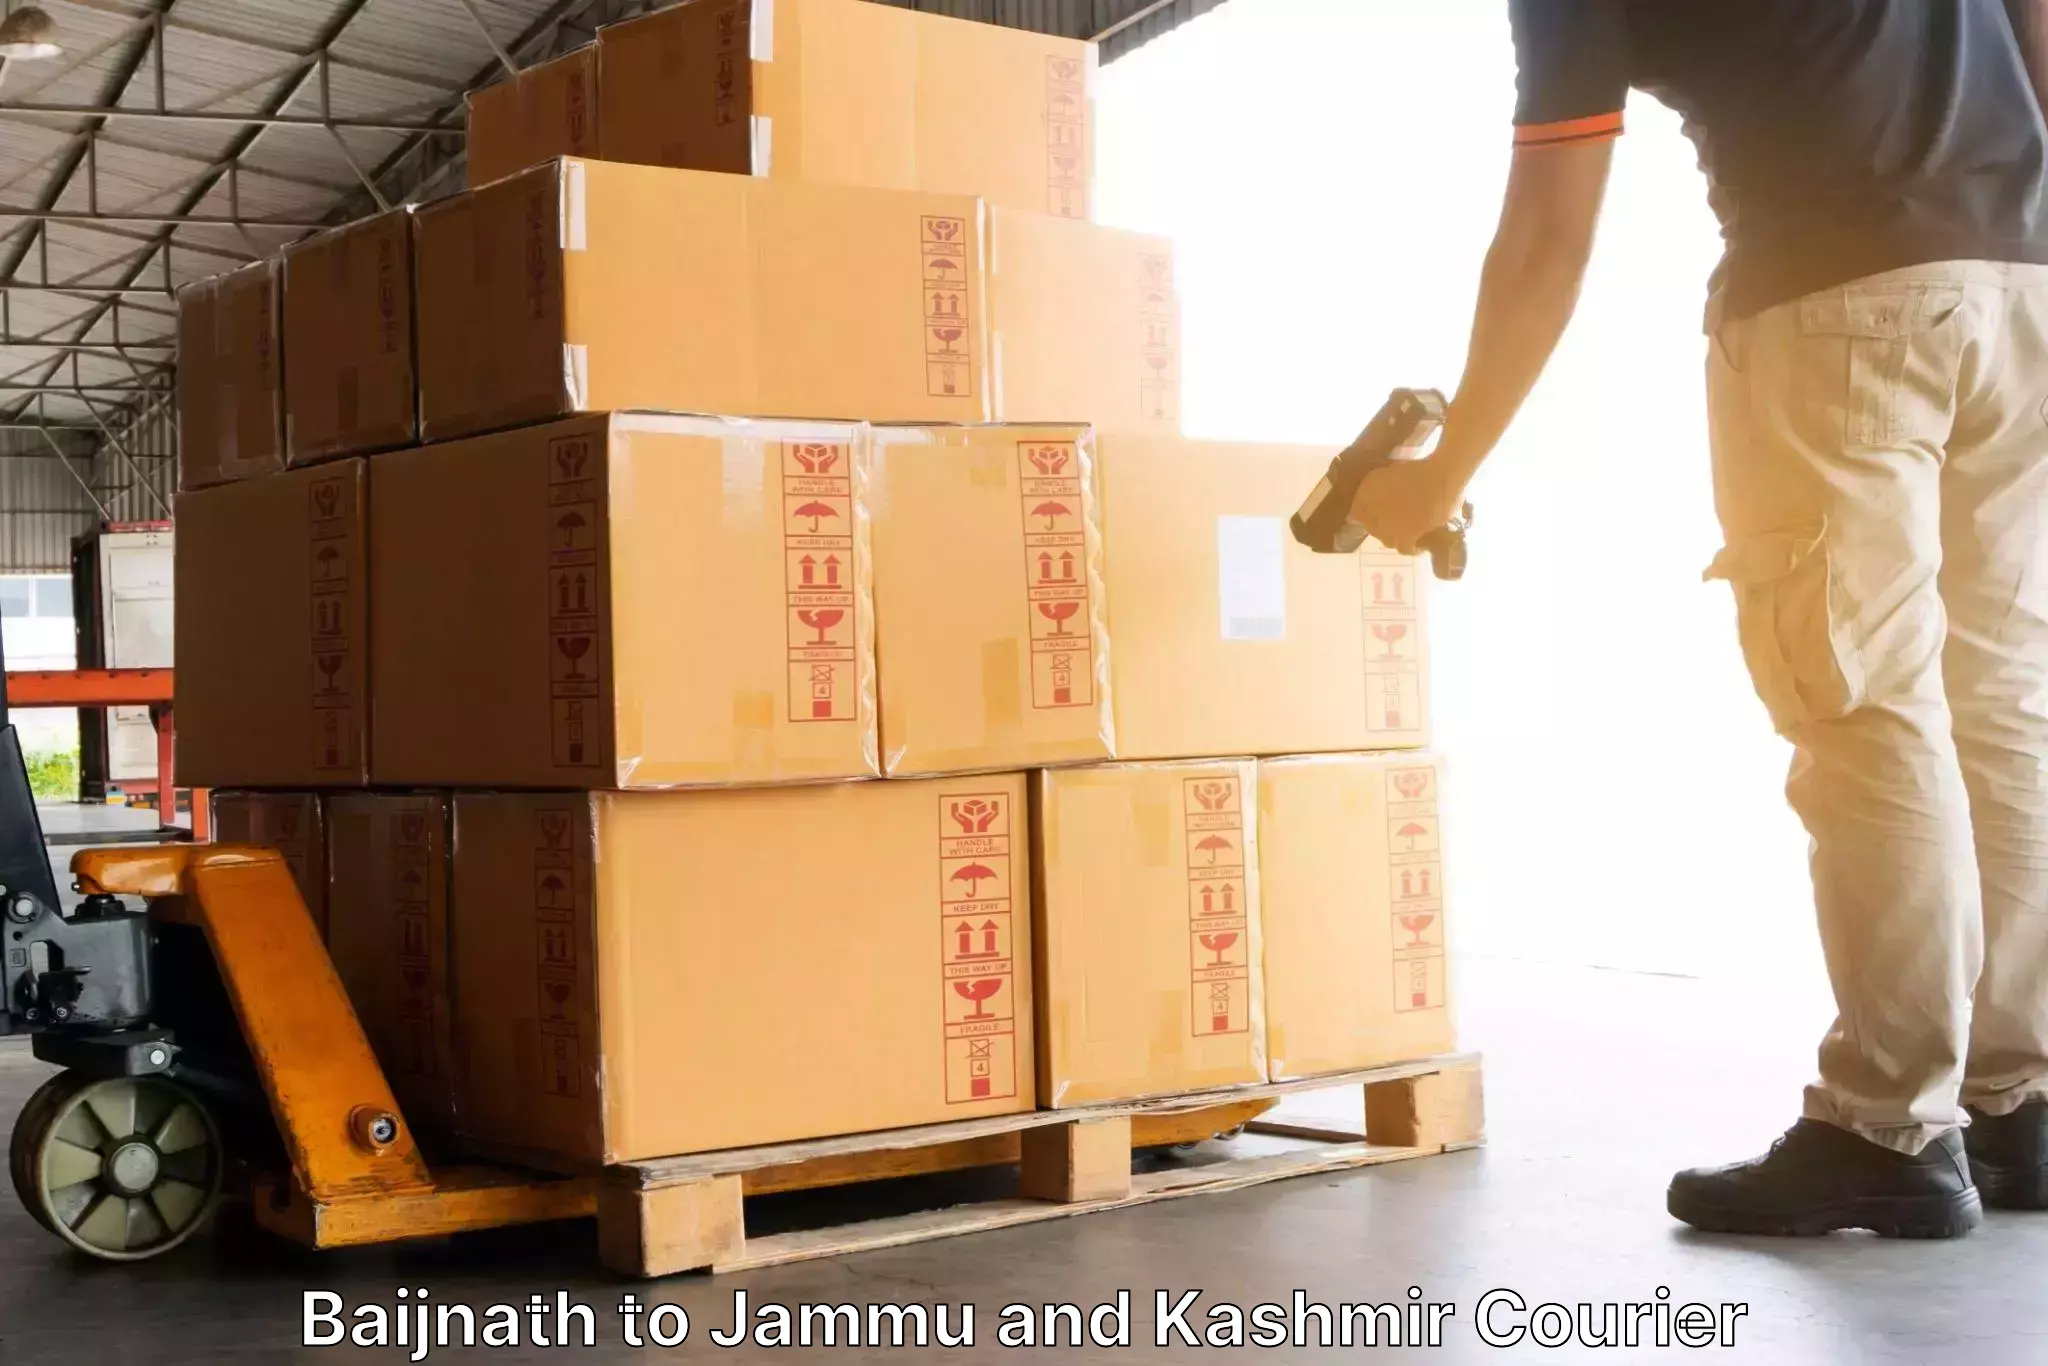 Customer-centric shipping in Baijnath to Sopore